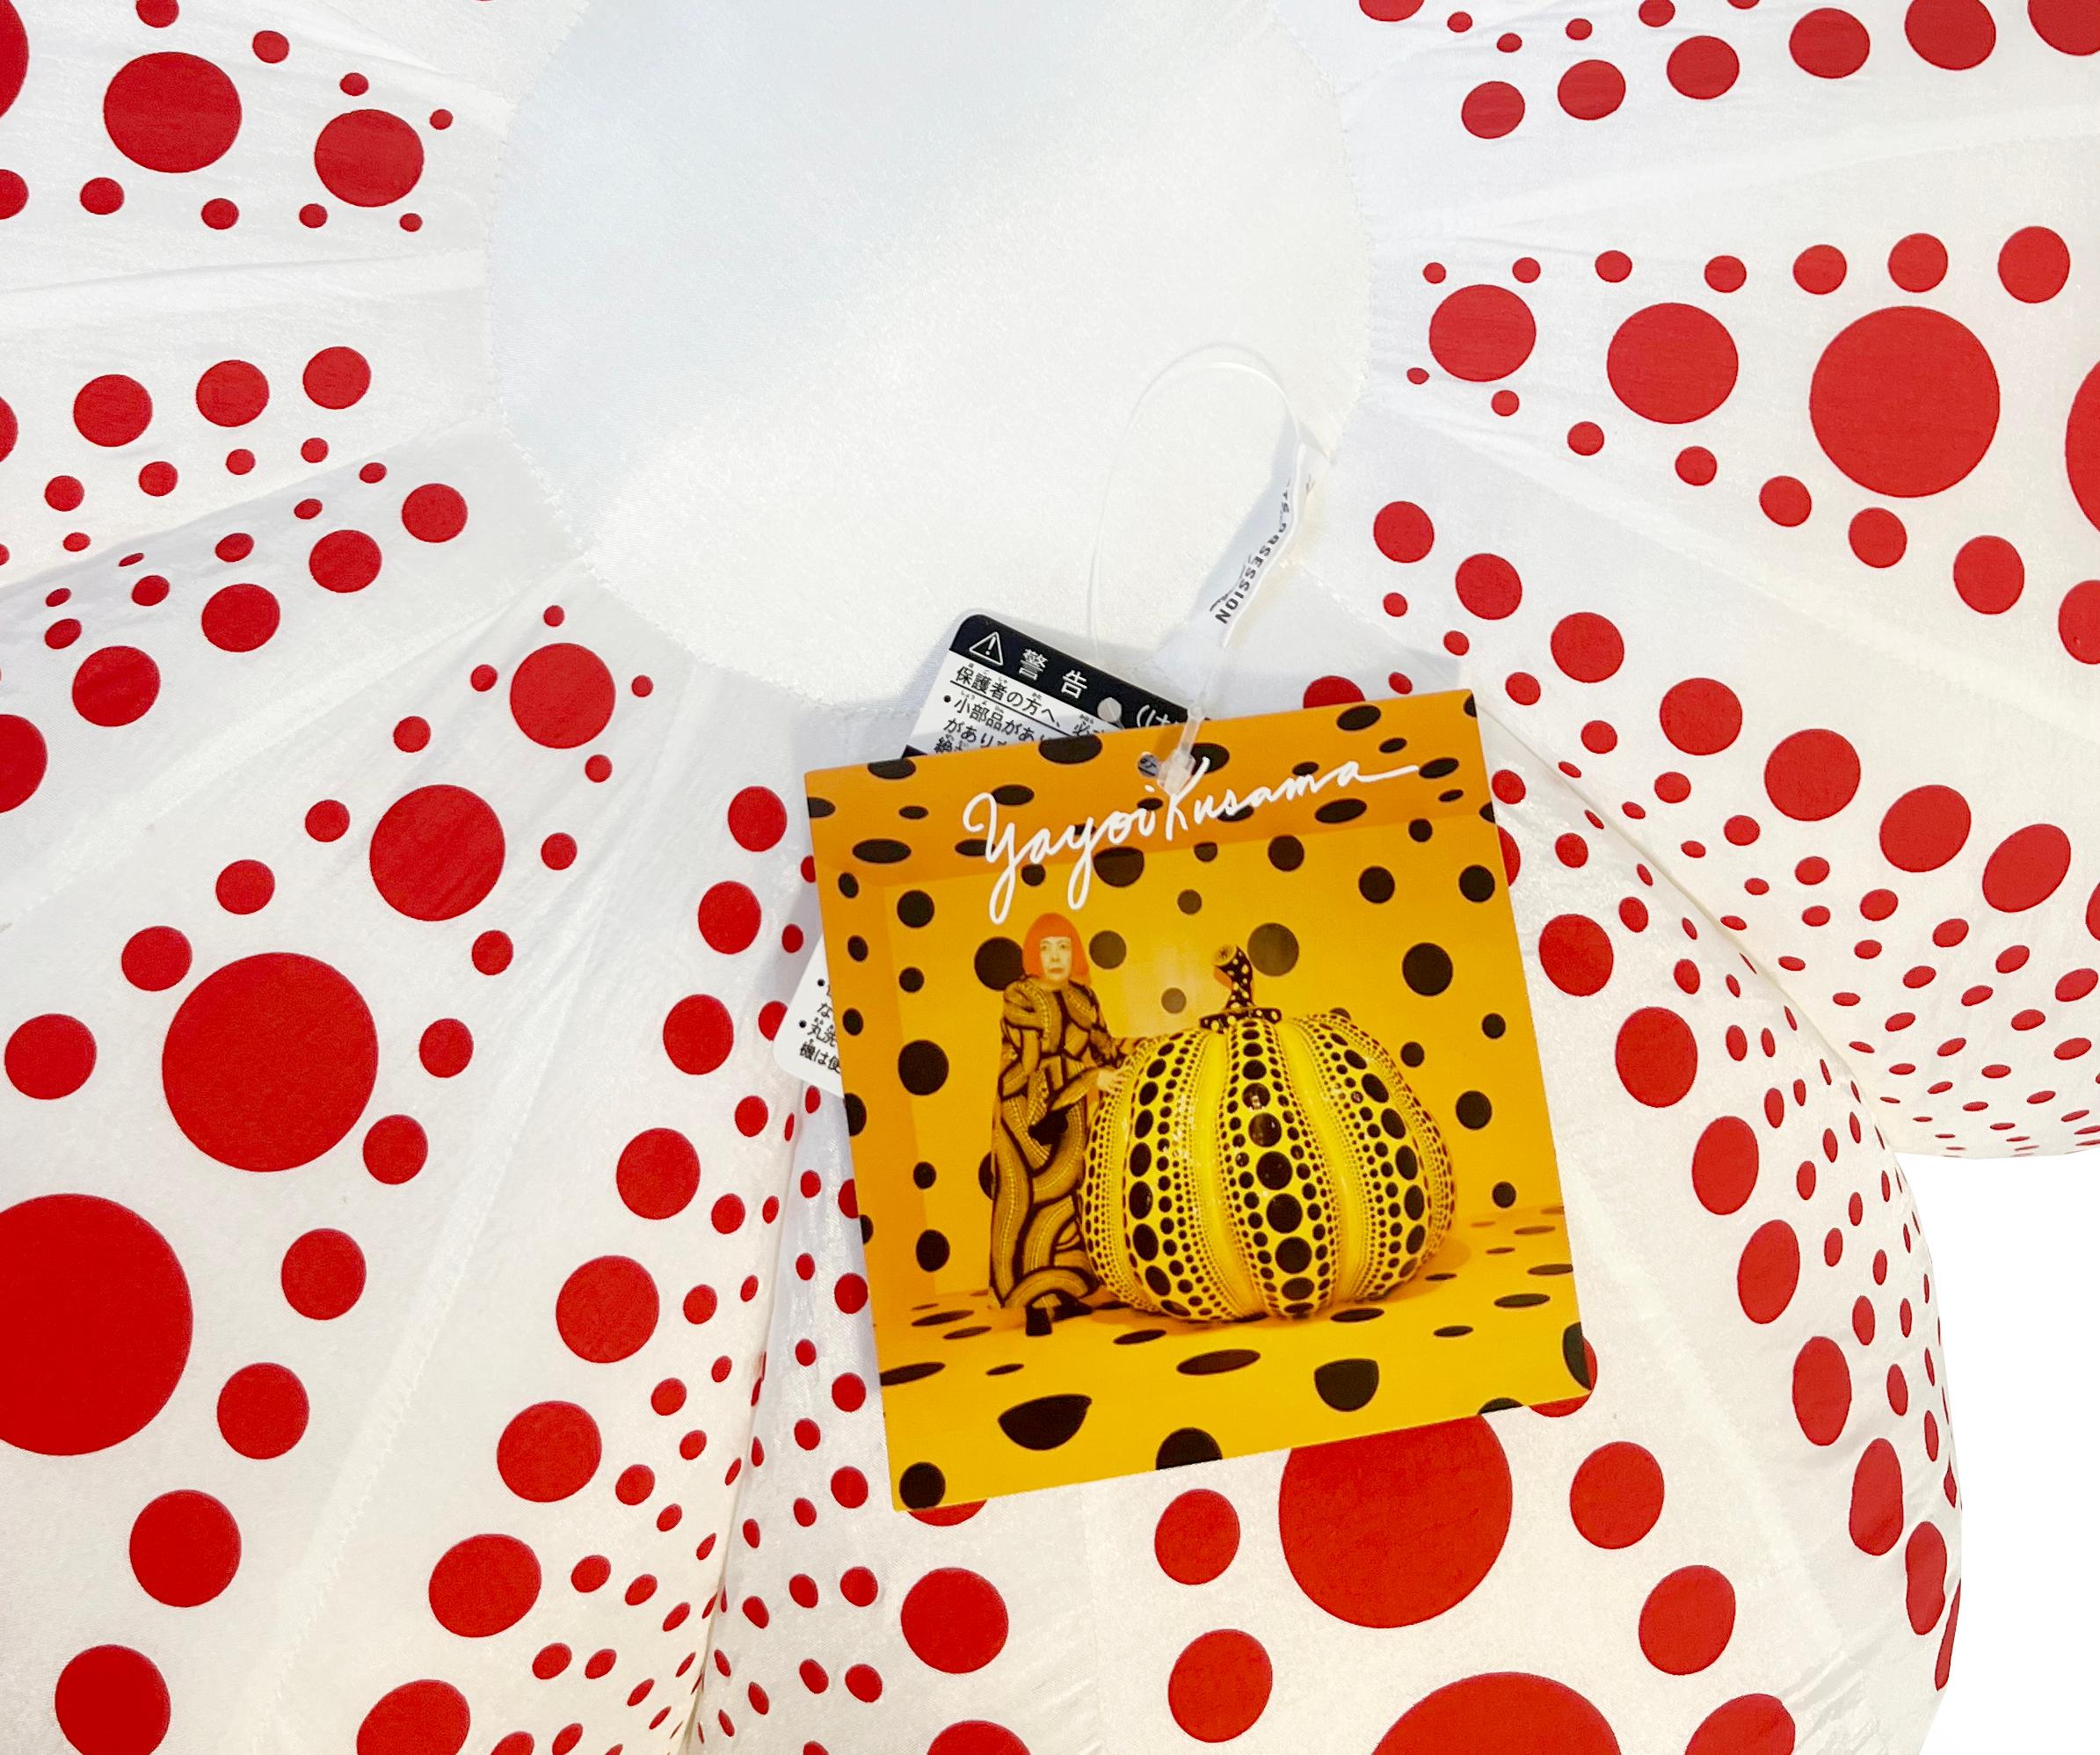 Yayoi Kusama Rot-Weißer Kürbis (Plüsch):
Ein ikonisches, farbenfrohes Pop-Art-Werk - dieser große Kusama-Plüschkürbis weist die universellen Polka-Dot-Muster und kräftigen Farben auf, für die die Künstlerin vielleicht am besten bekannt ist. Kusama